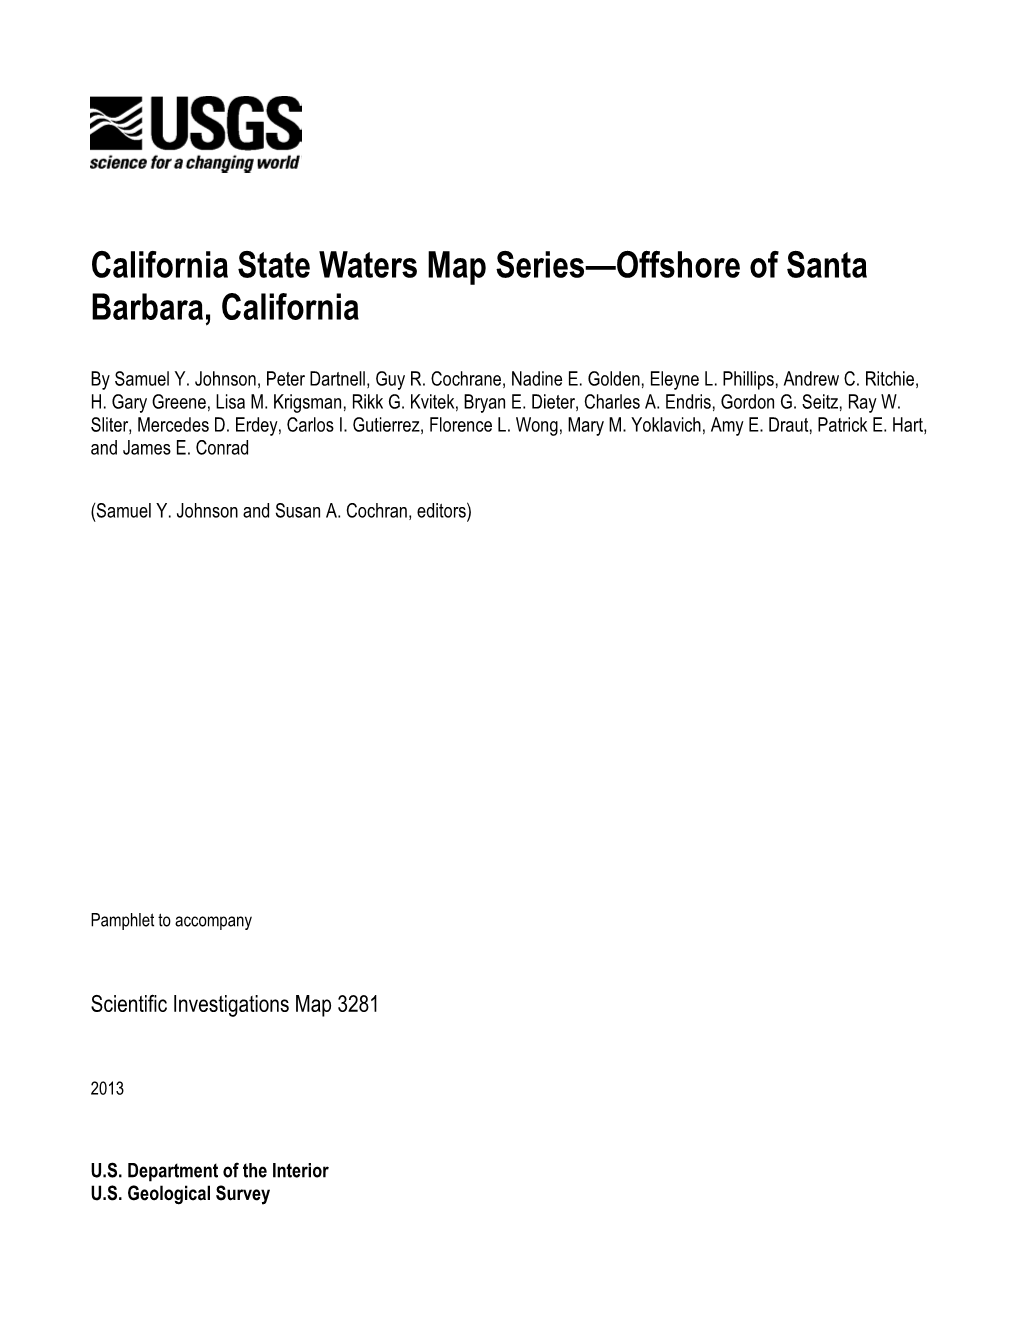 California State Waters Map Series: Offshore of Santa Barbara, California